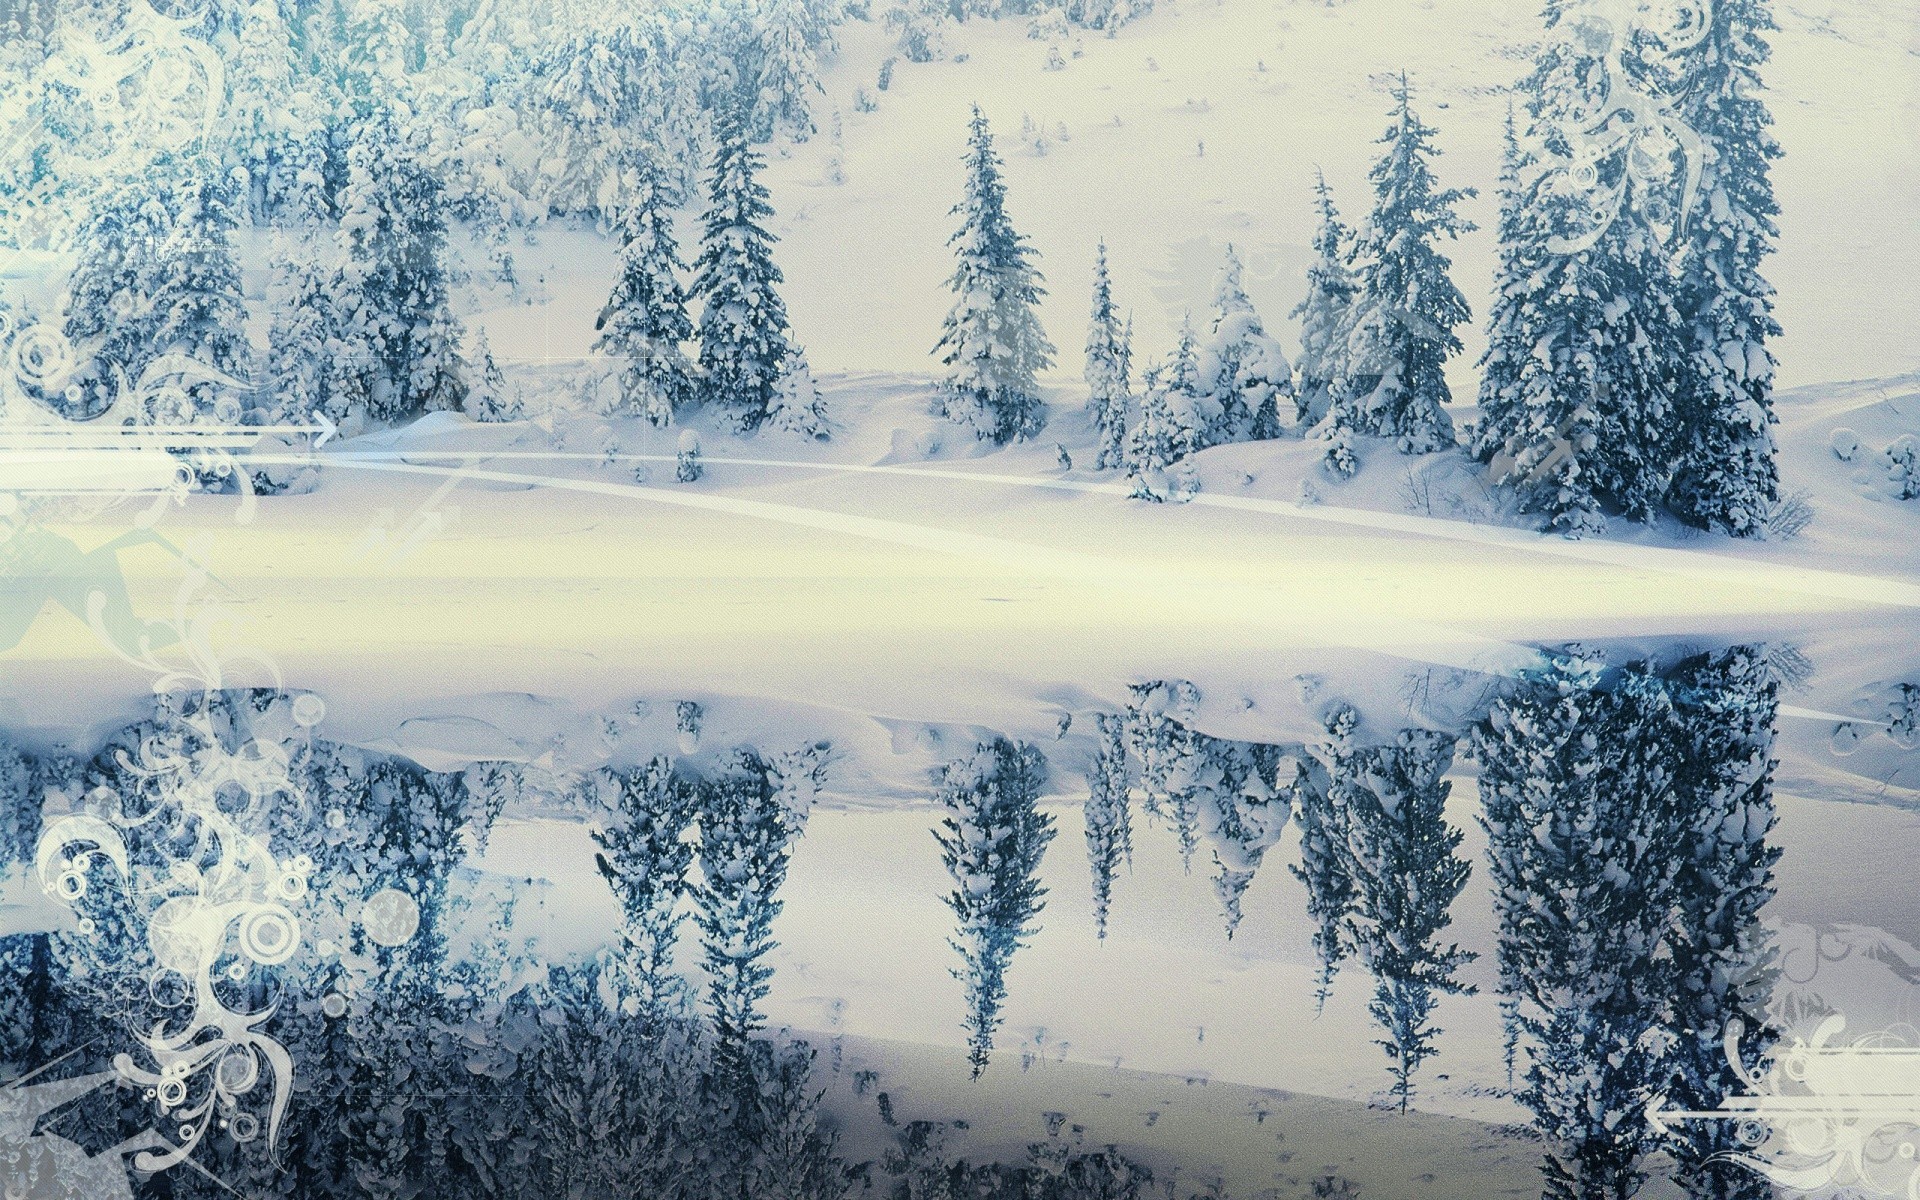 креатив снег зима холодная горы живописный пейзаж природа древесины лед мороз замороженные холм путешествия сезон